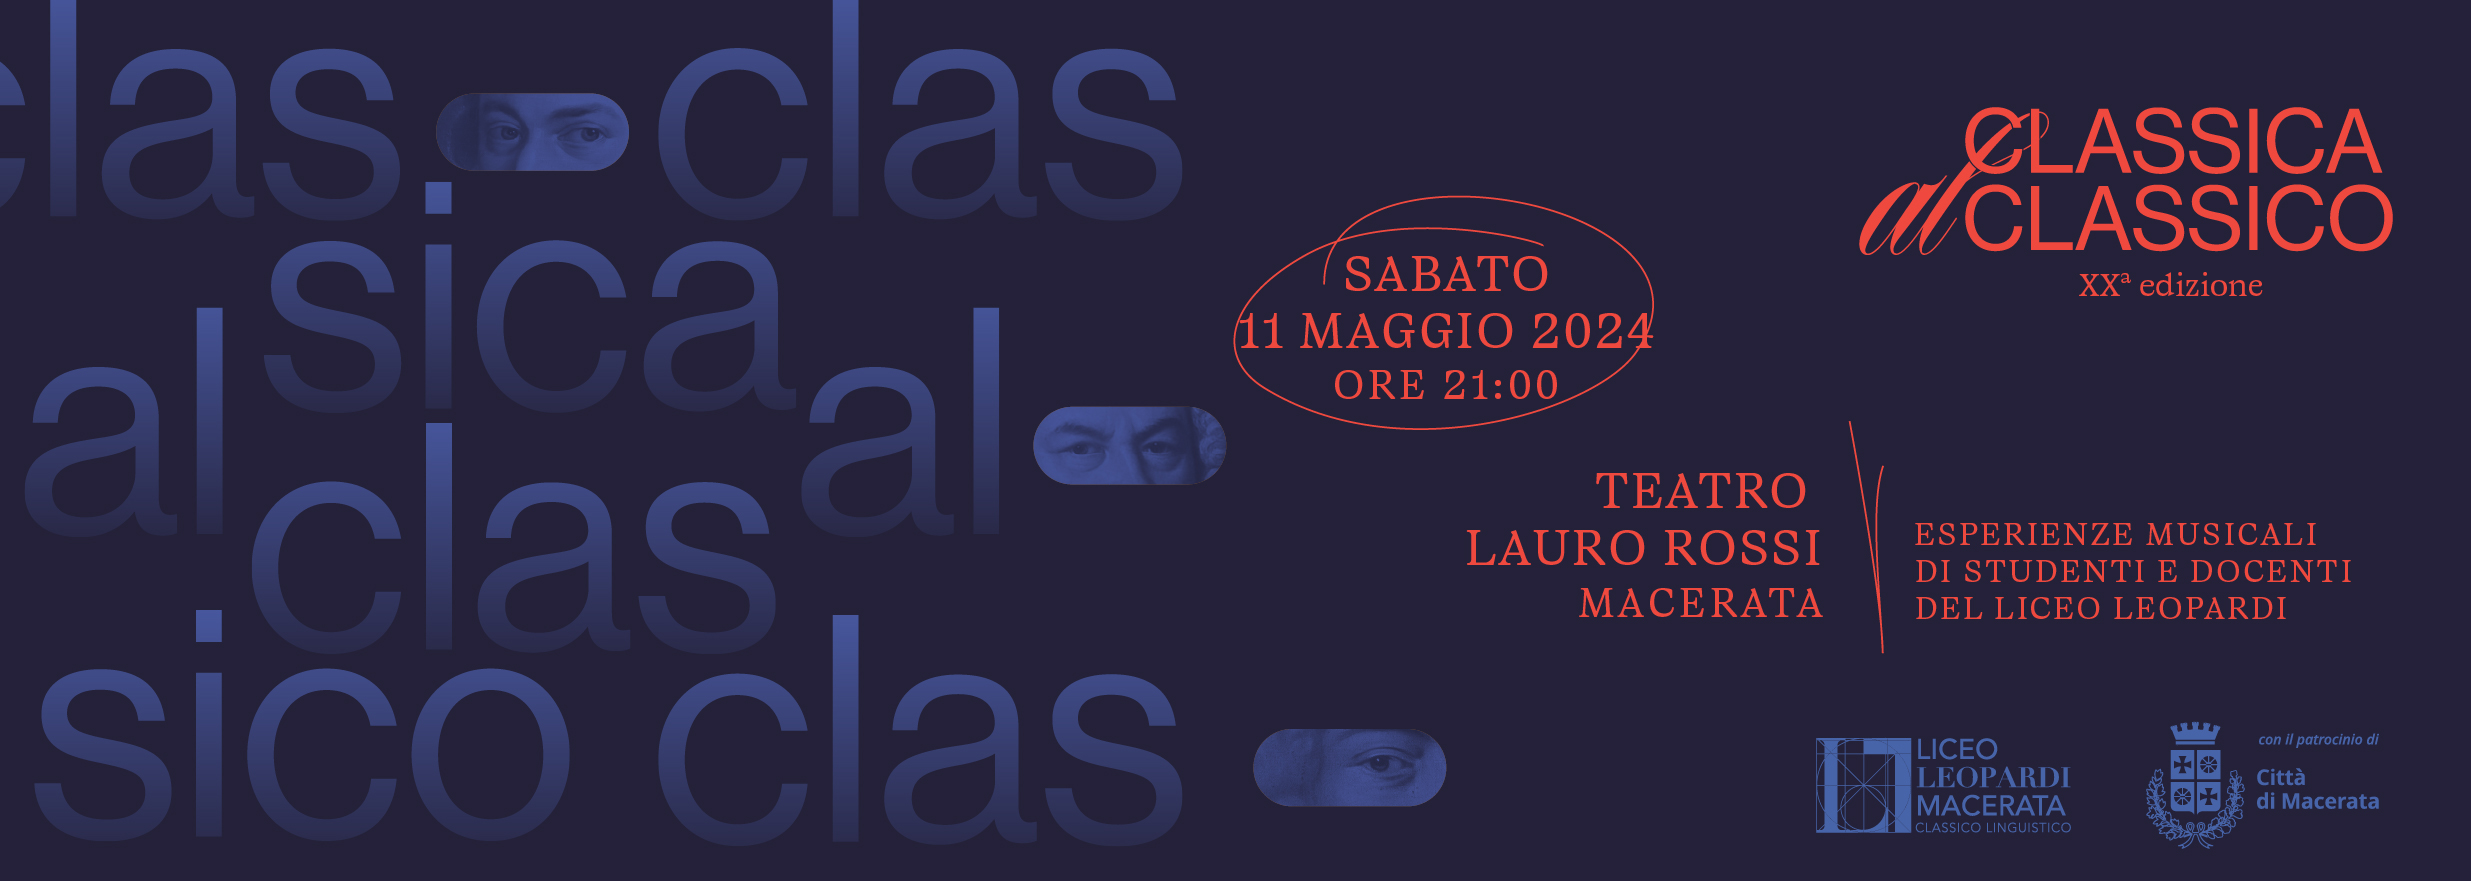 Classica al Classico: la XX Edizione è un successo - Liceo Statale G. Leopardi Macerata